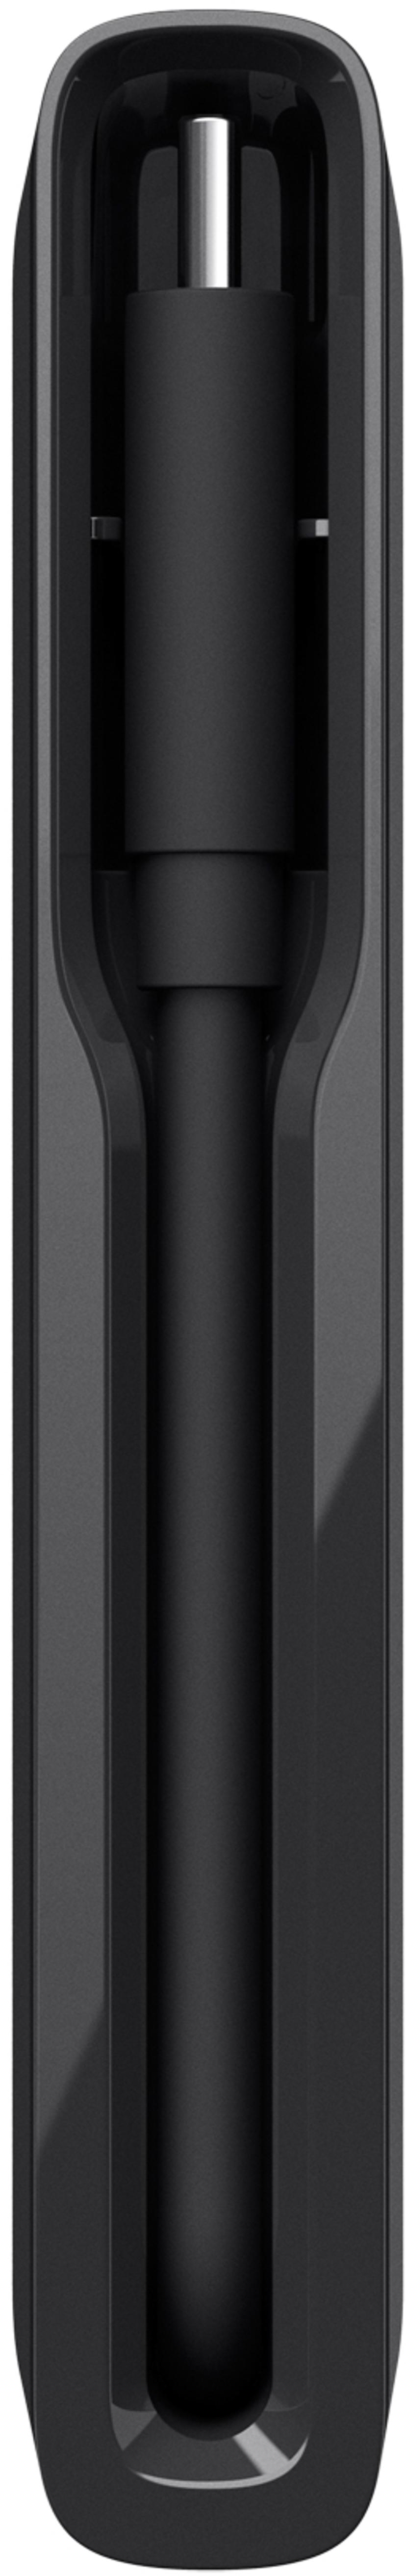 Belkin 4-Port USB-C Hub